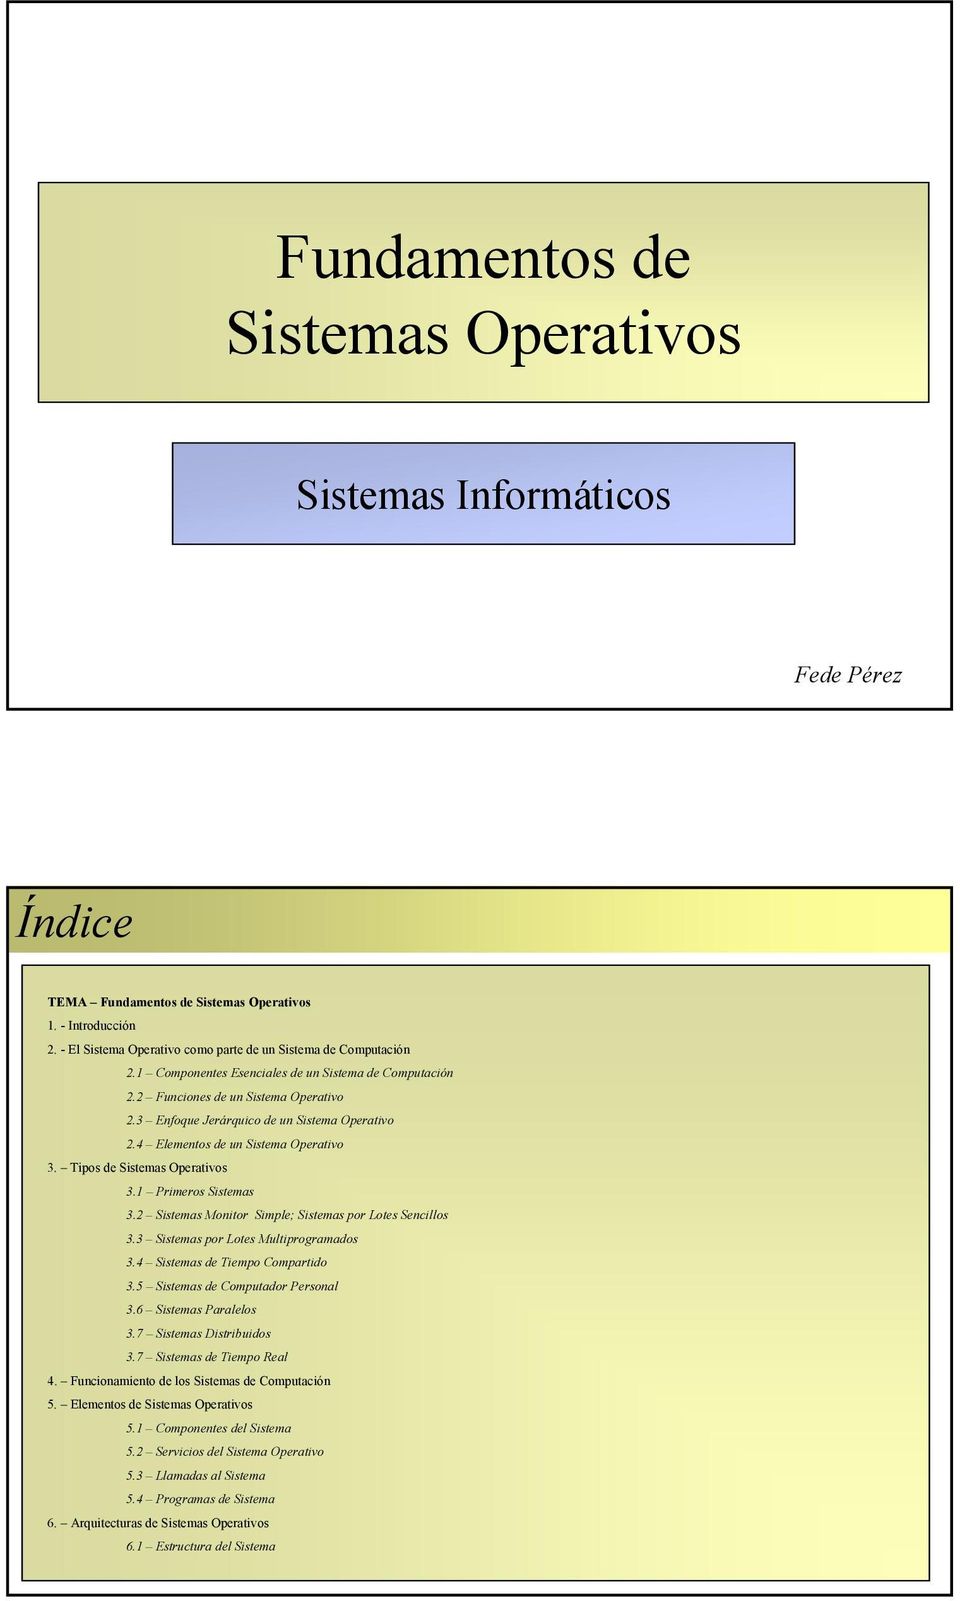 3 Enfoque Jerárquico de un Sistema Operativo 2.4 Elementos de un Sistema Operativo 3. Tipos de Sistemas Operativos 3.1 Primeros Sistemas 3.2 Sistemas Monitor Simple; Sistemas por Lotes Sencillos 3.